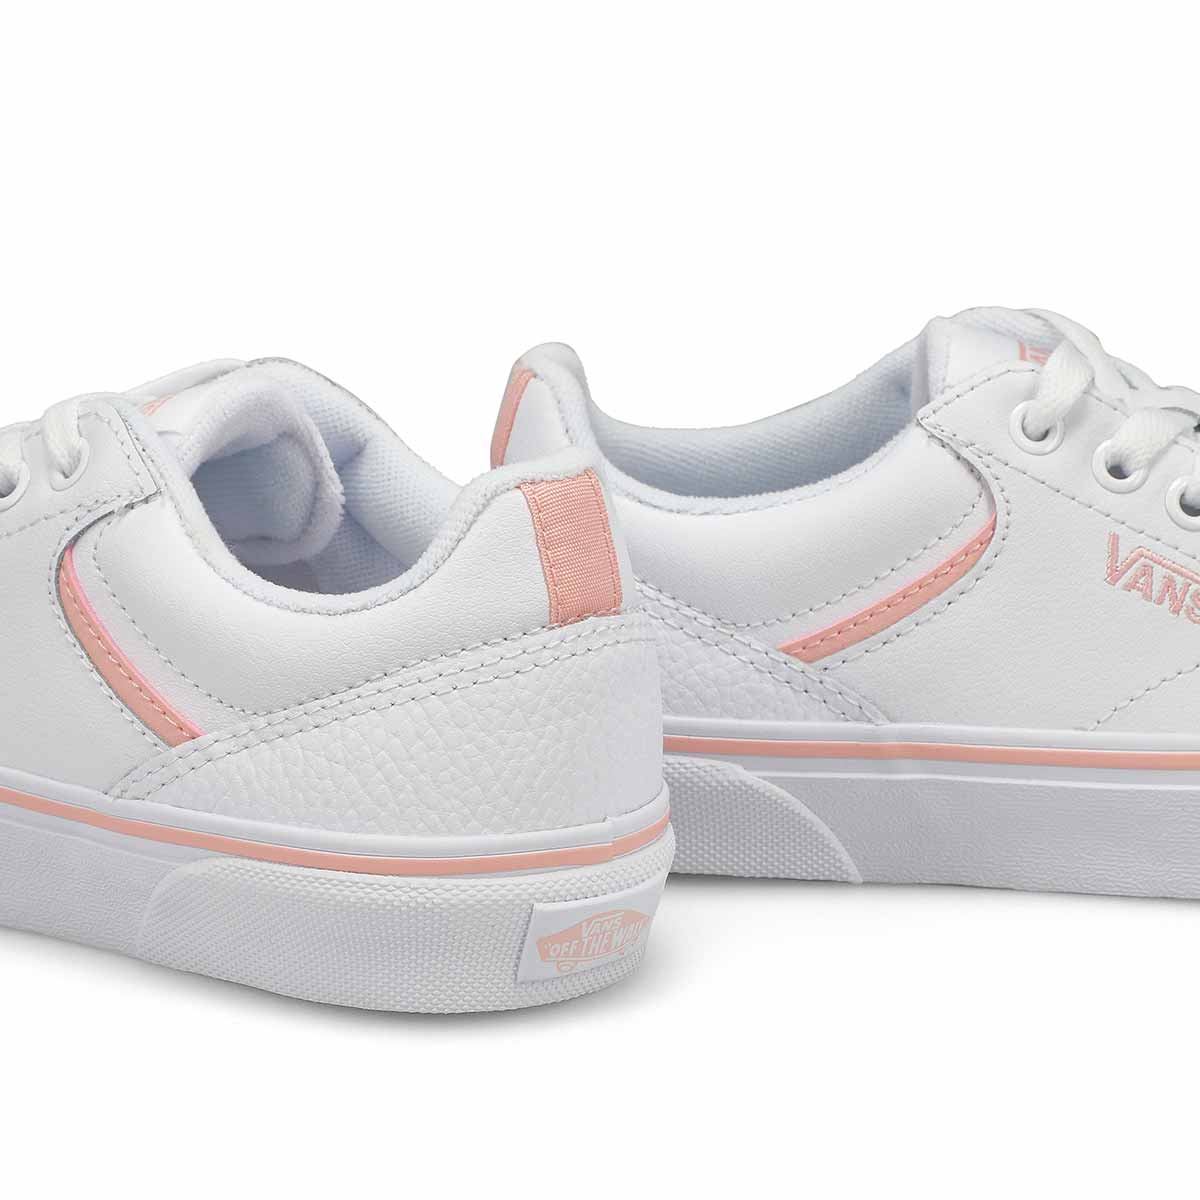 Women's Seldan Leather Lace Up Sneaker - Pink/White